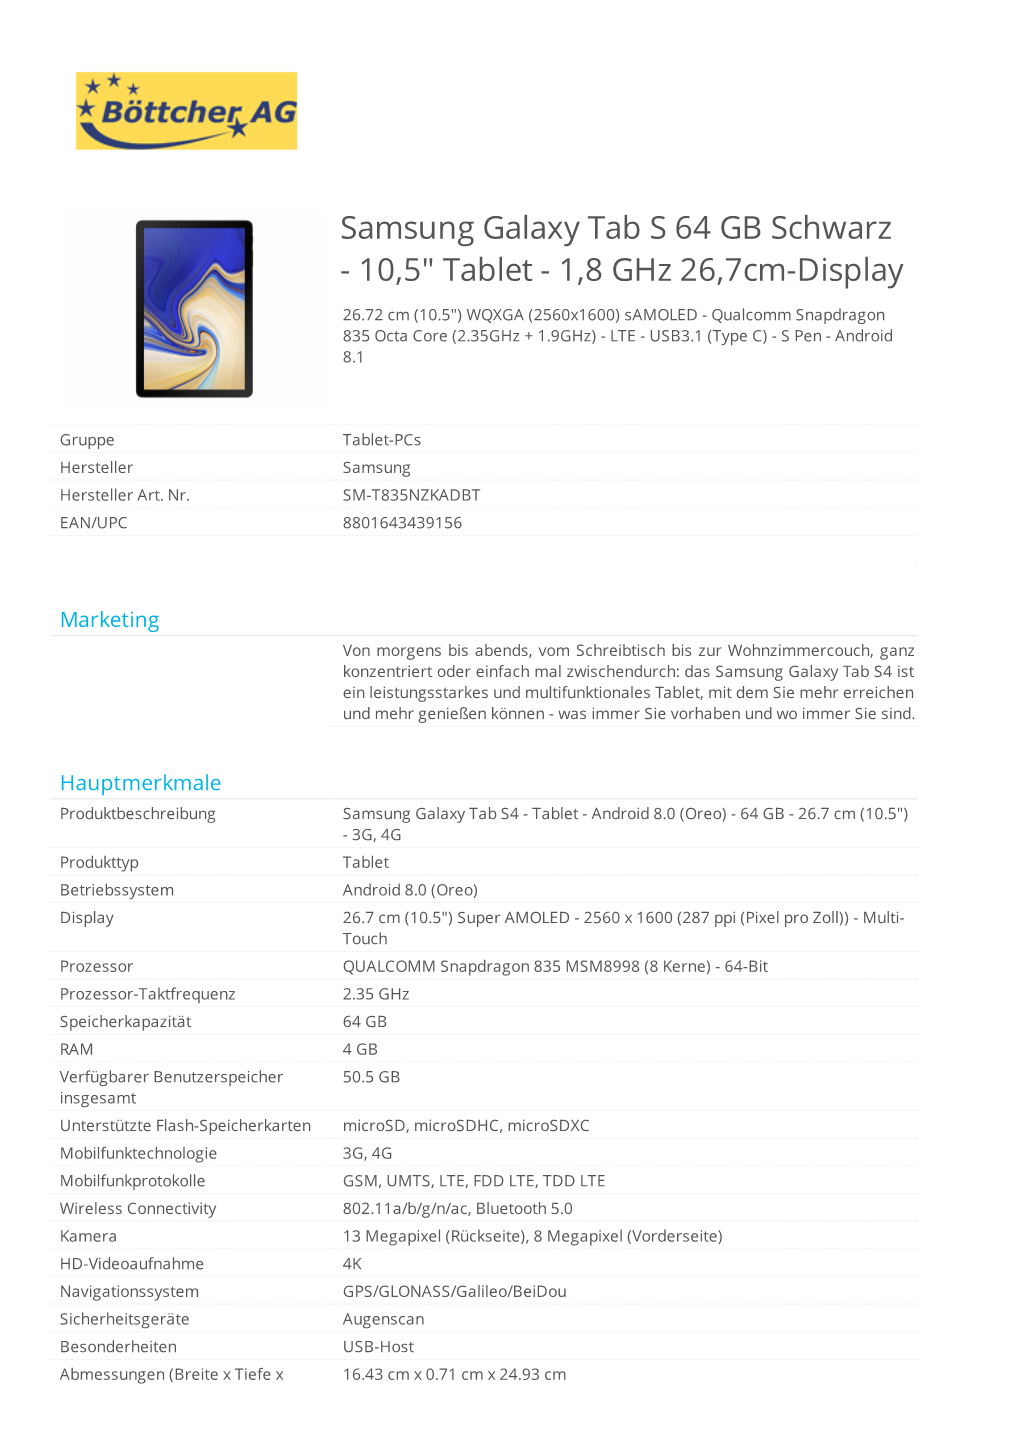 Samsung Galaxy Tab S 64 GB Schwarz - 10,5" Tablet - 1,8 Ghz 26,7Cm-Display